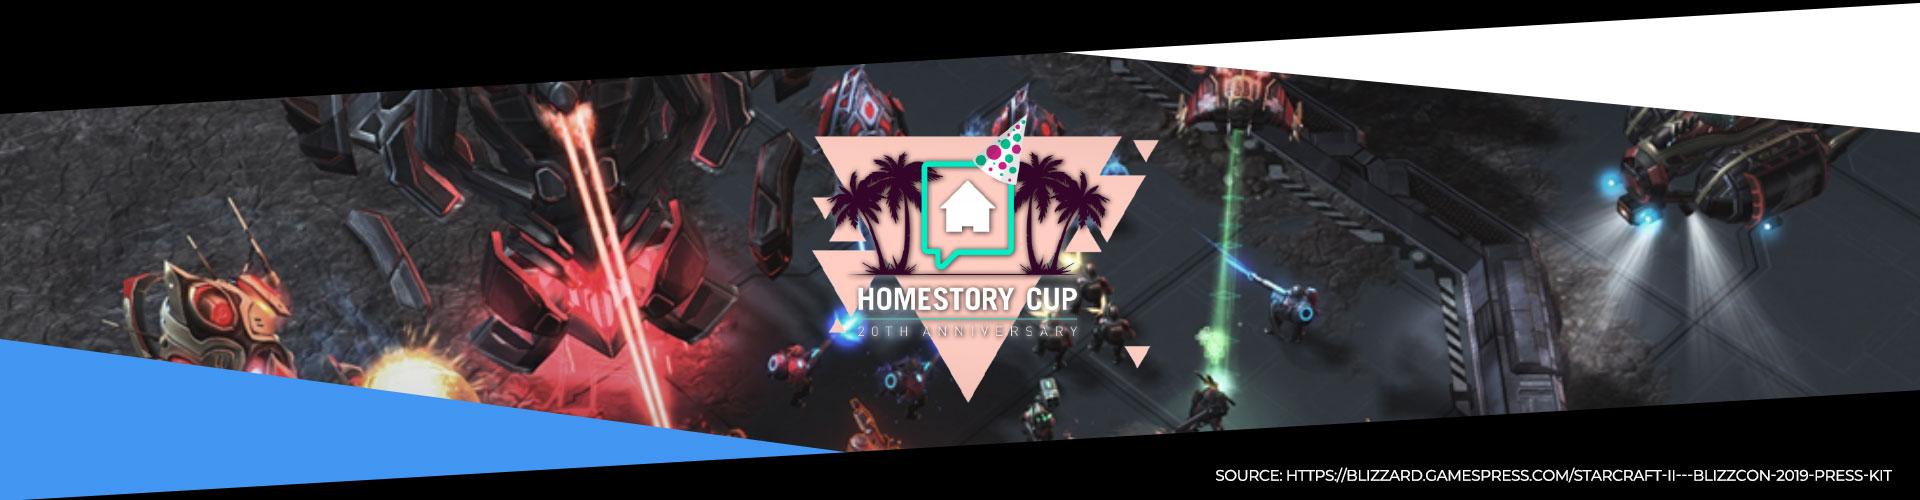 Denna eventsida för HomeStory Cup XX innehåller all information du behöver.